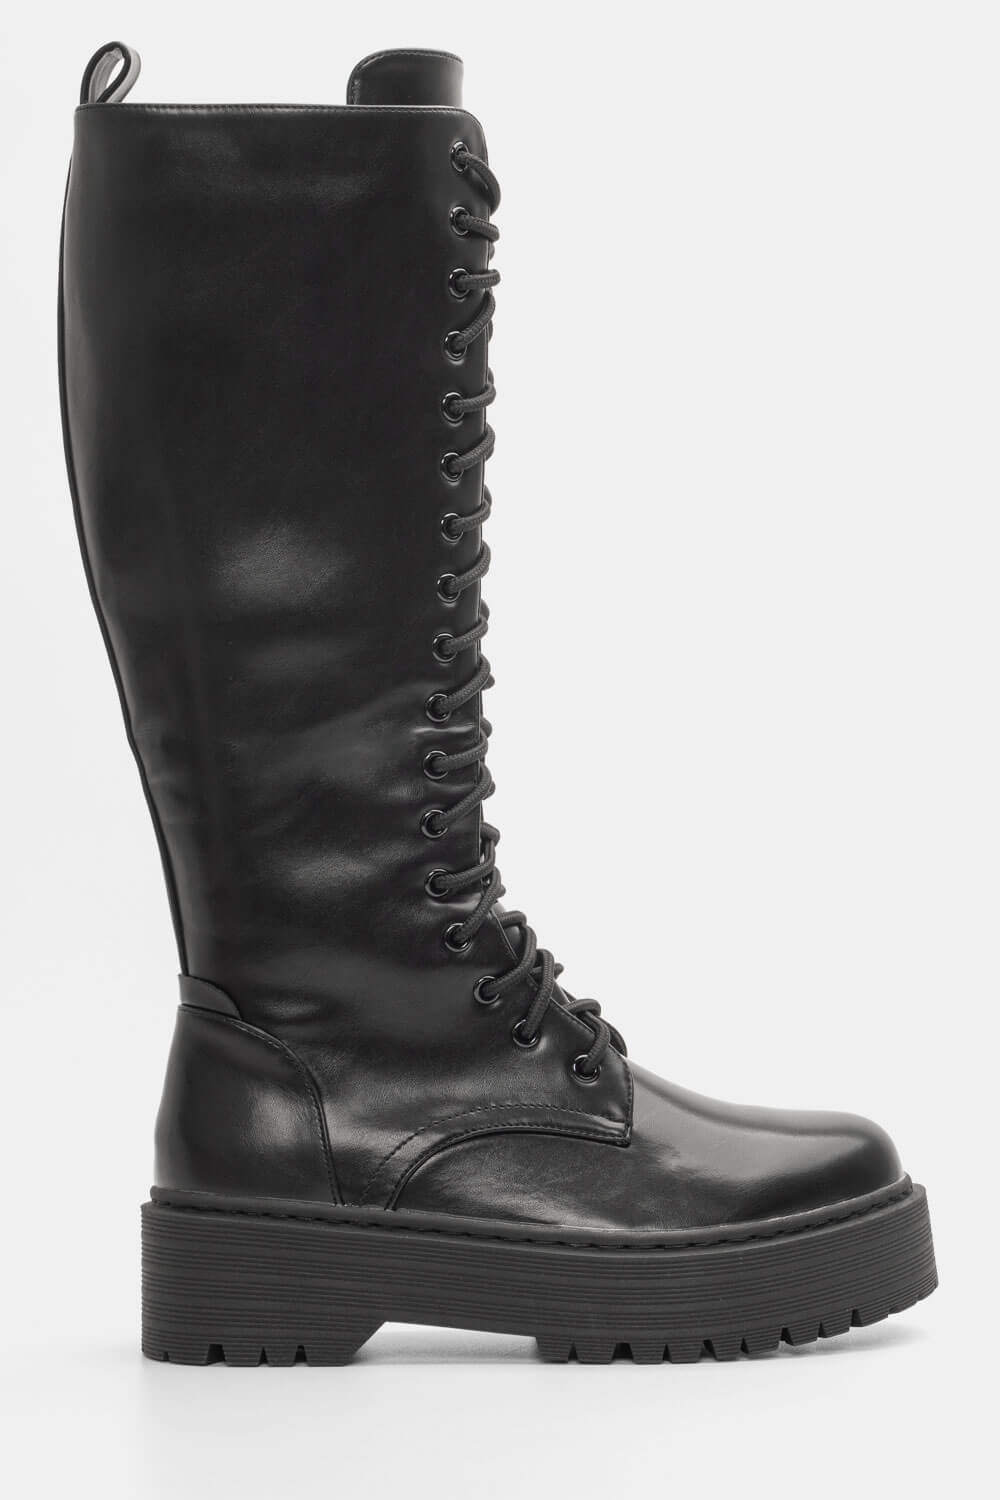 Μπότες Δίσολες με Κορδόνια - Μαύρο 96445